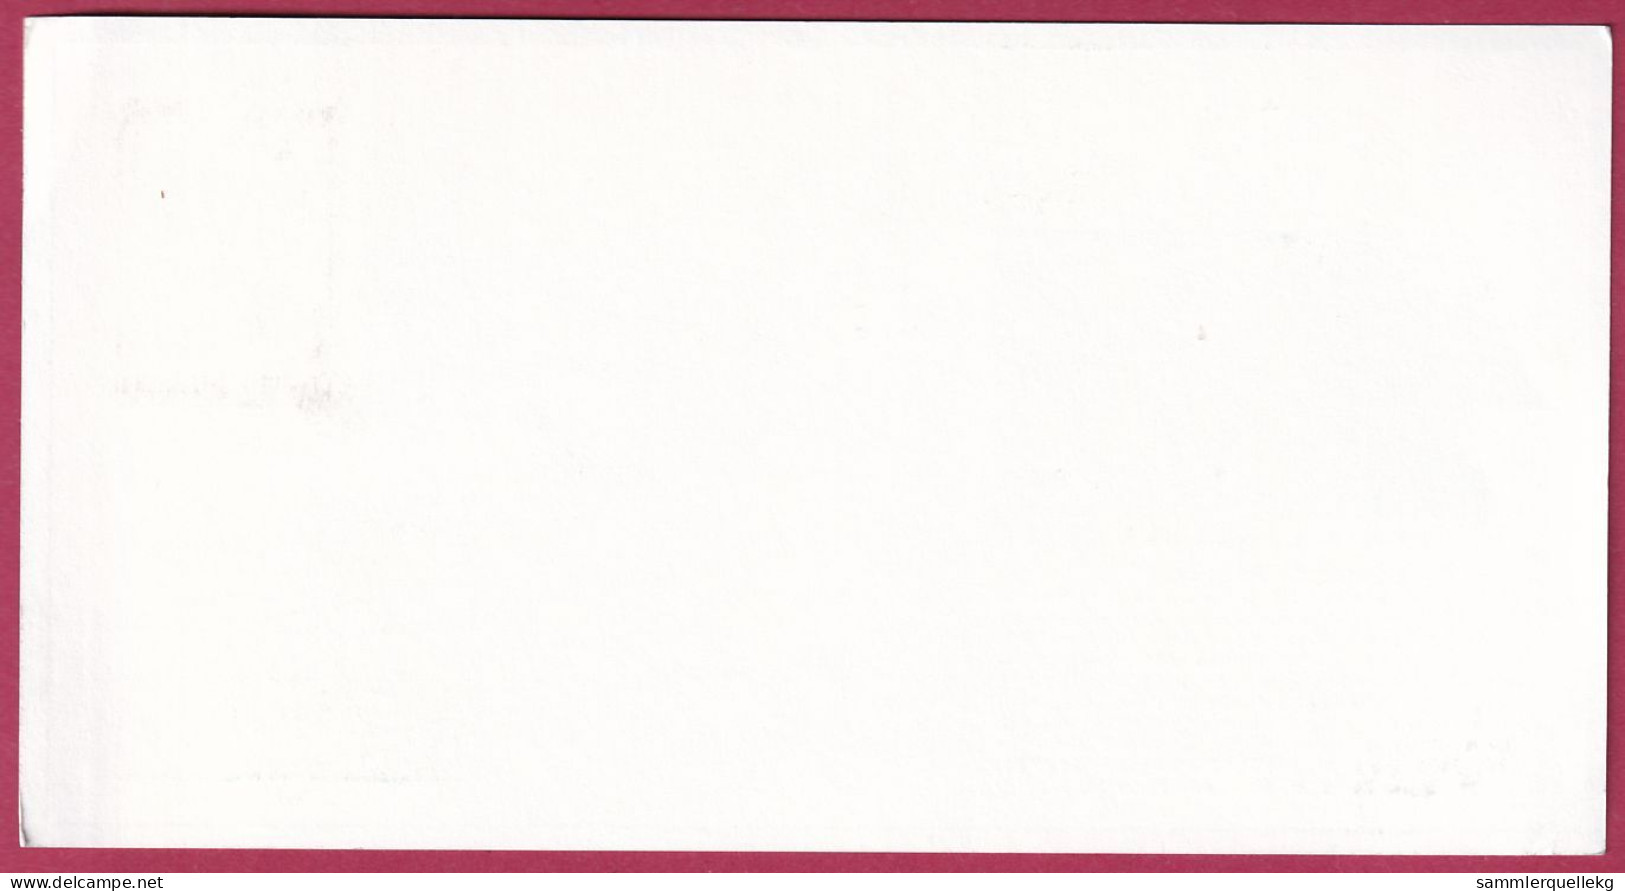 Österreich MNr.1911 Sonderstempel Gmünd 5. 3. 1988, 10 Jahre 1. Kosmisches Postamt - Europa